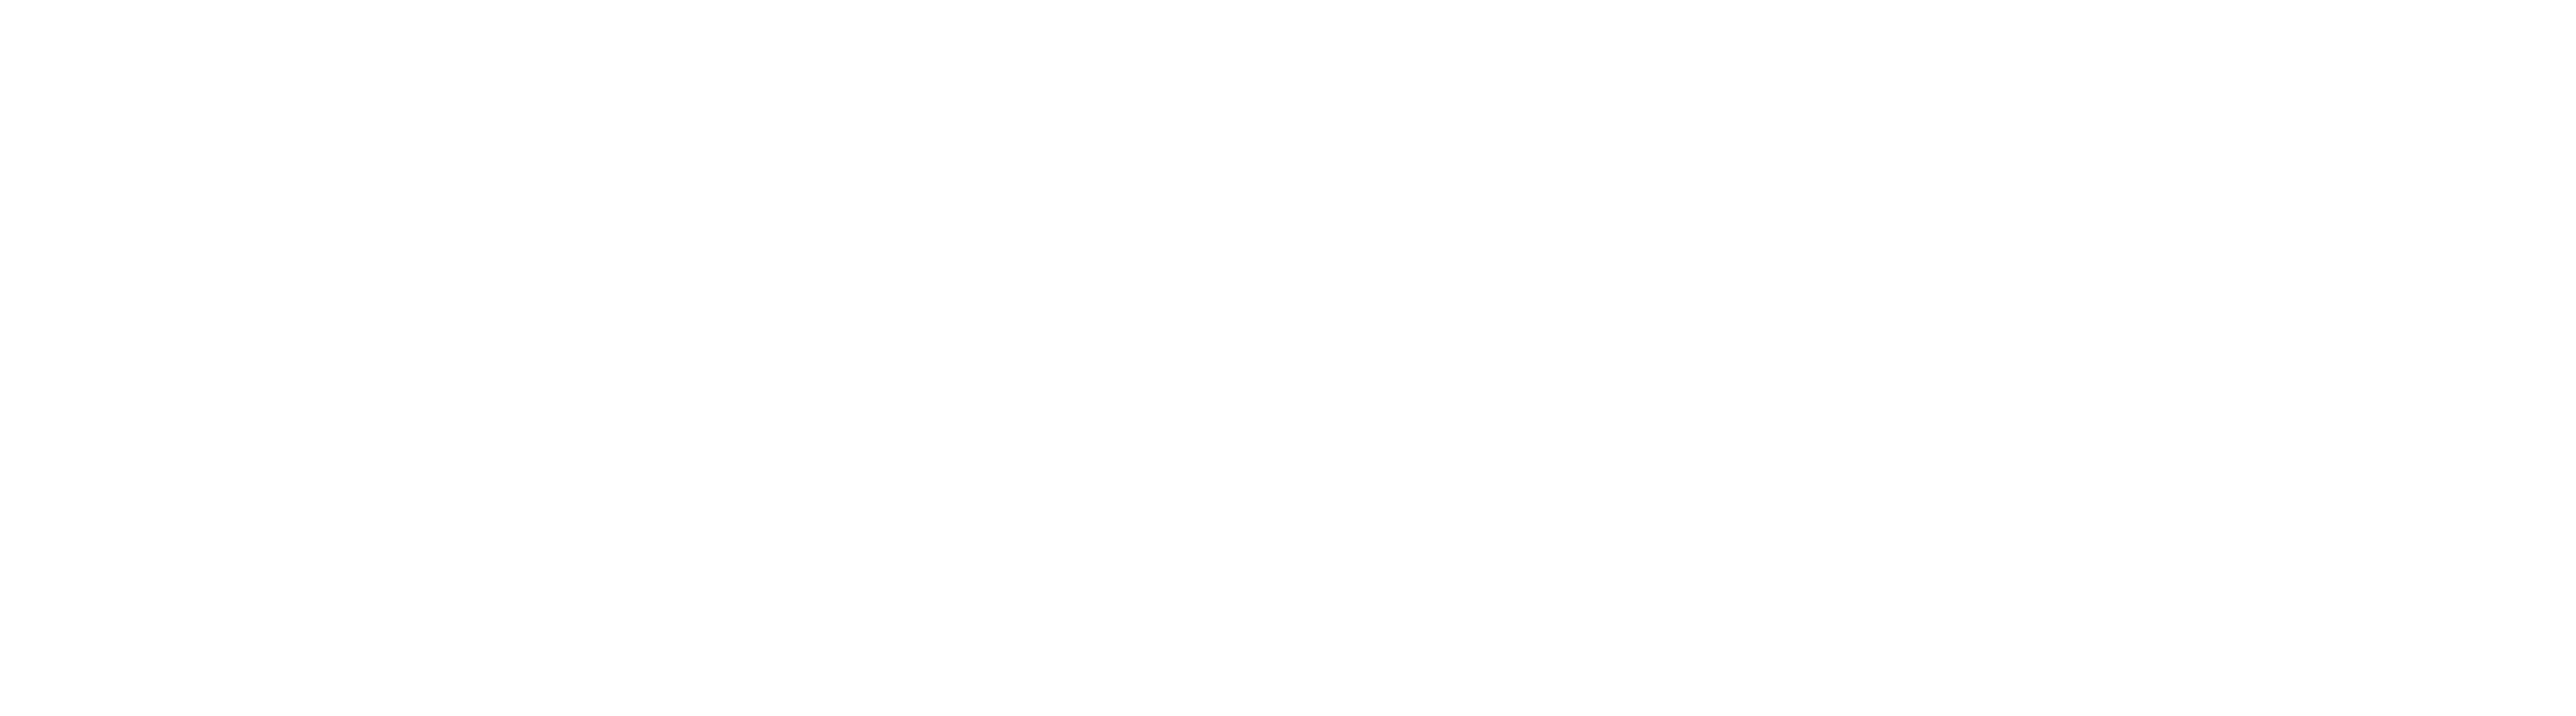 Logo BalconEasy